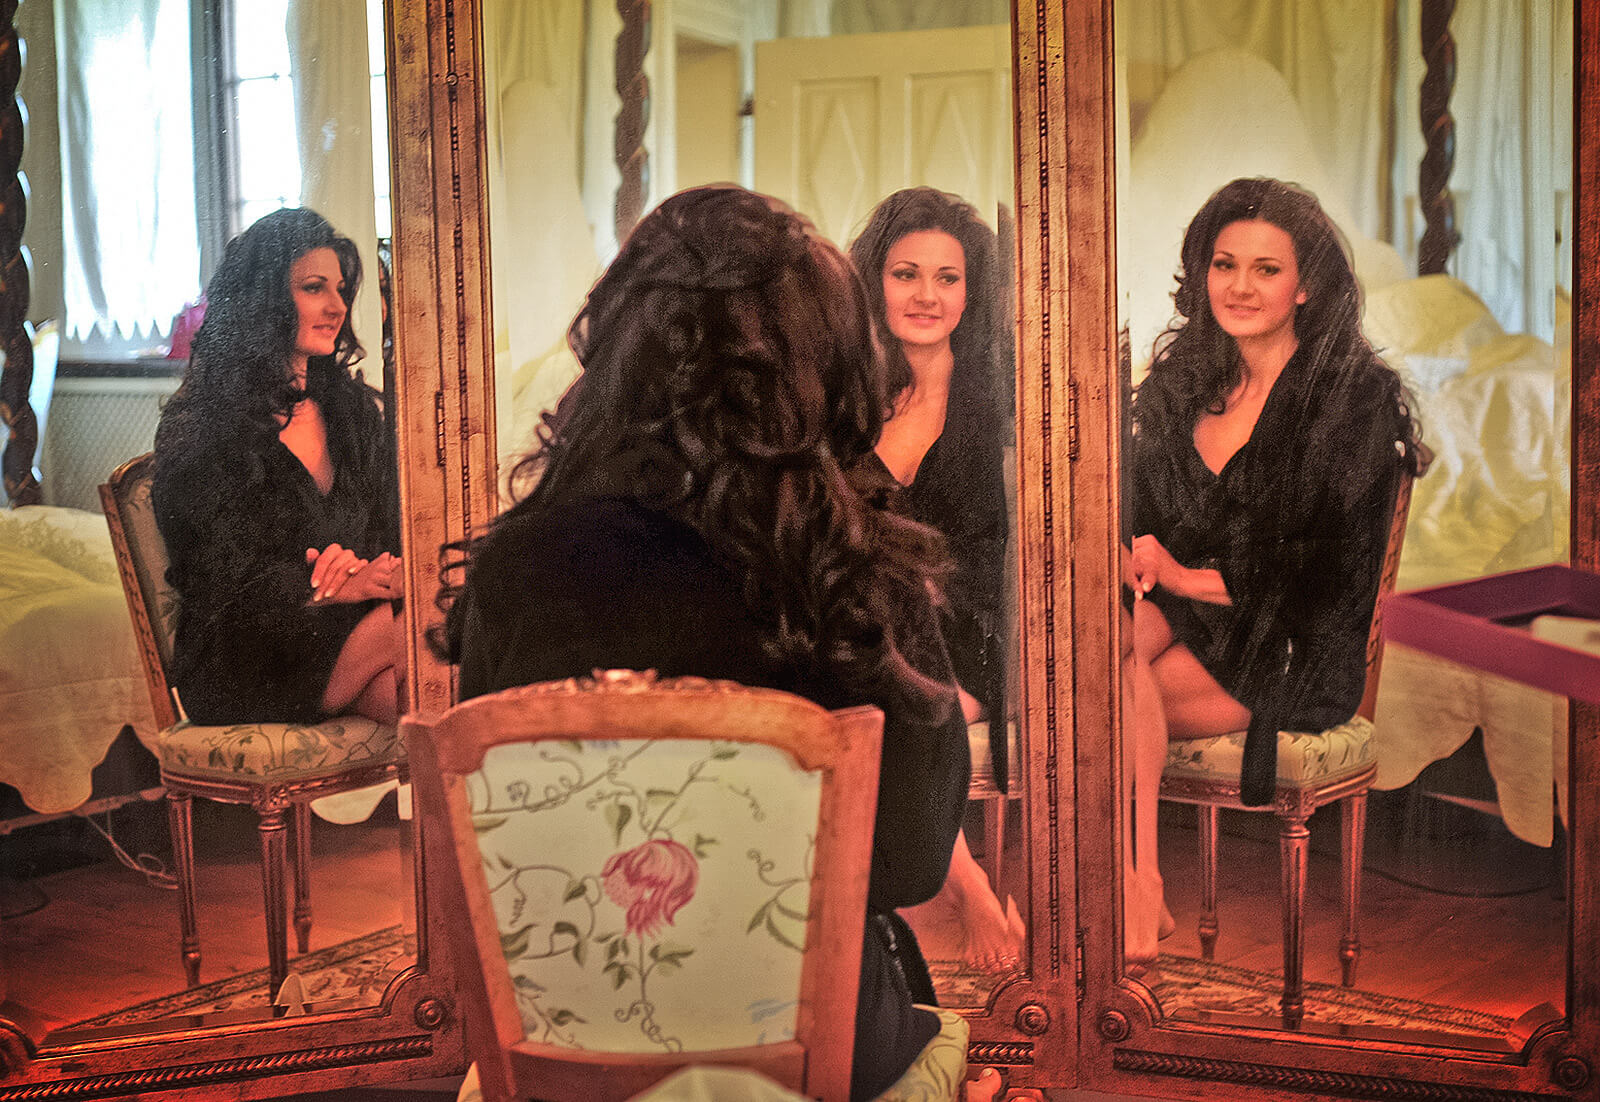 Braut mit langen, dunklen Haaren sitzt vor einem antiken Dreier Spiegel. Sie betrachtet ihr Spiegelbild und lächelt zufrieden